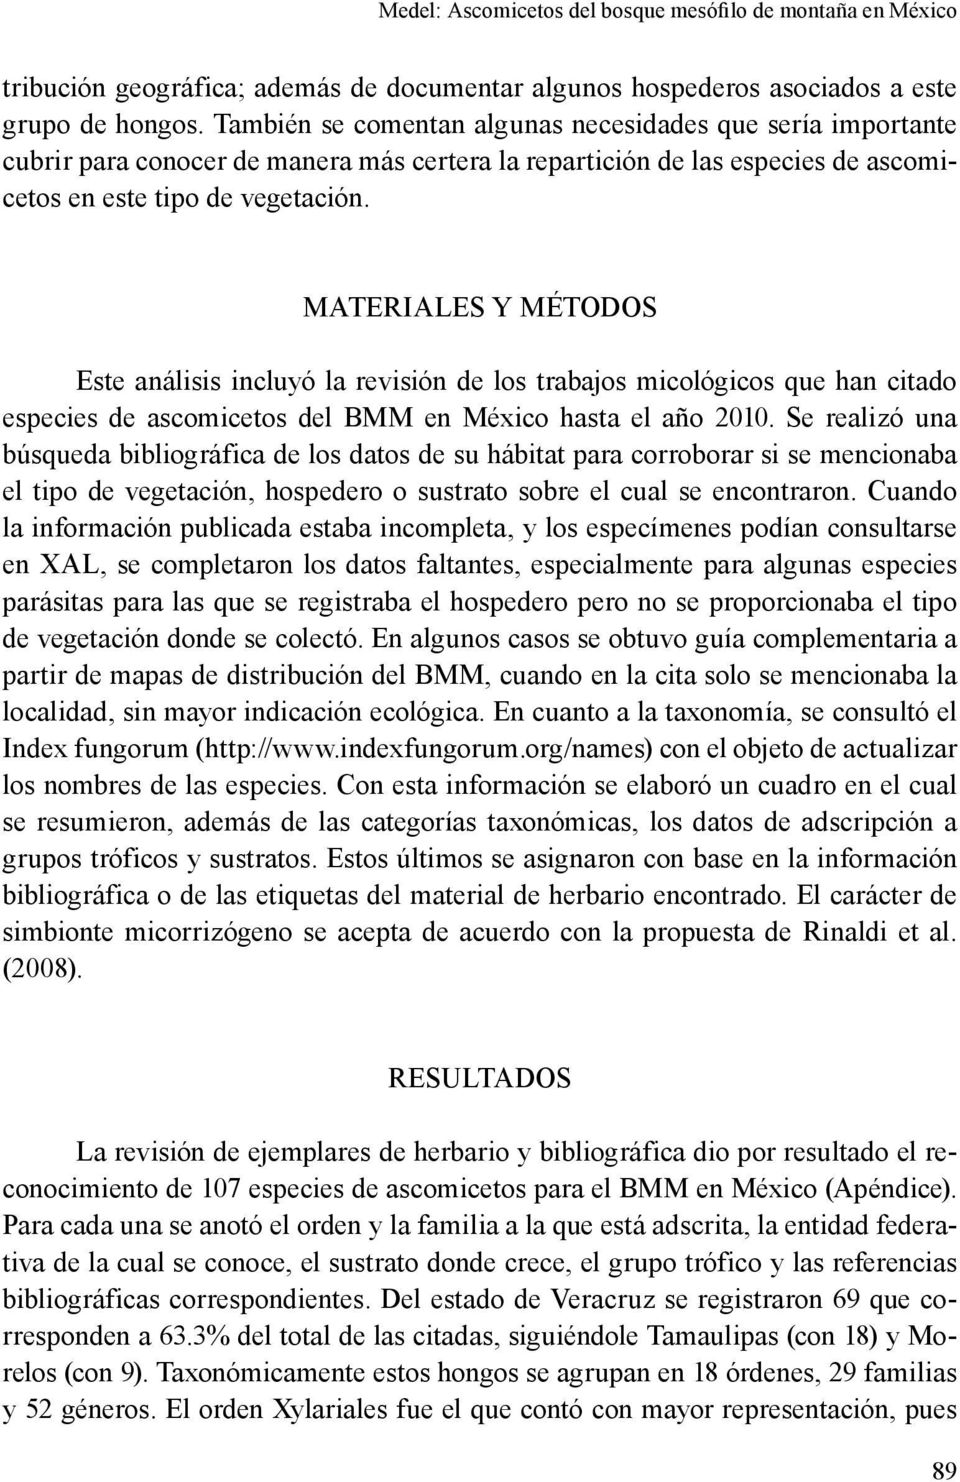 MATERIALES Y MÉTODOS Este análisis incluyó la revisión de los trabajos micológicos que han citado especies de ascomicetos del BMM en México hasta el año 2010.